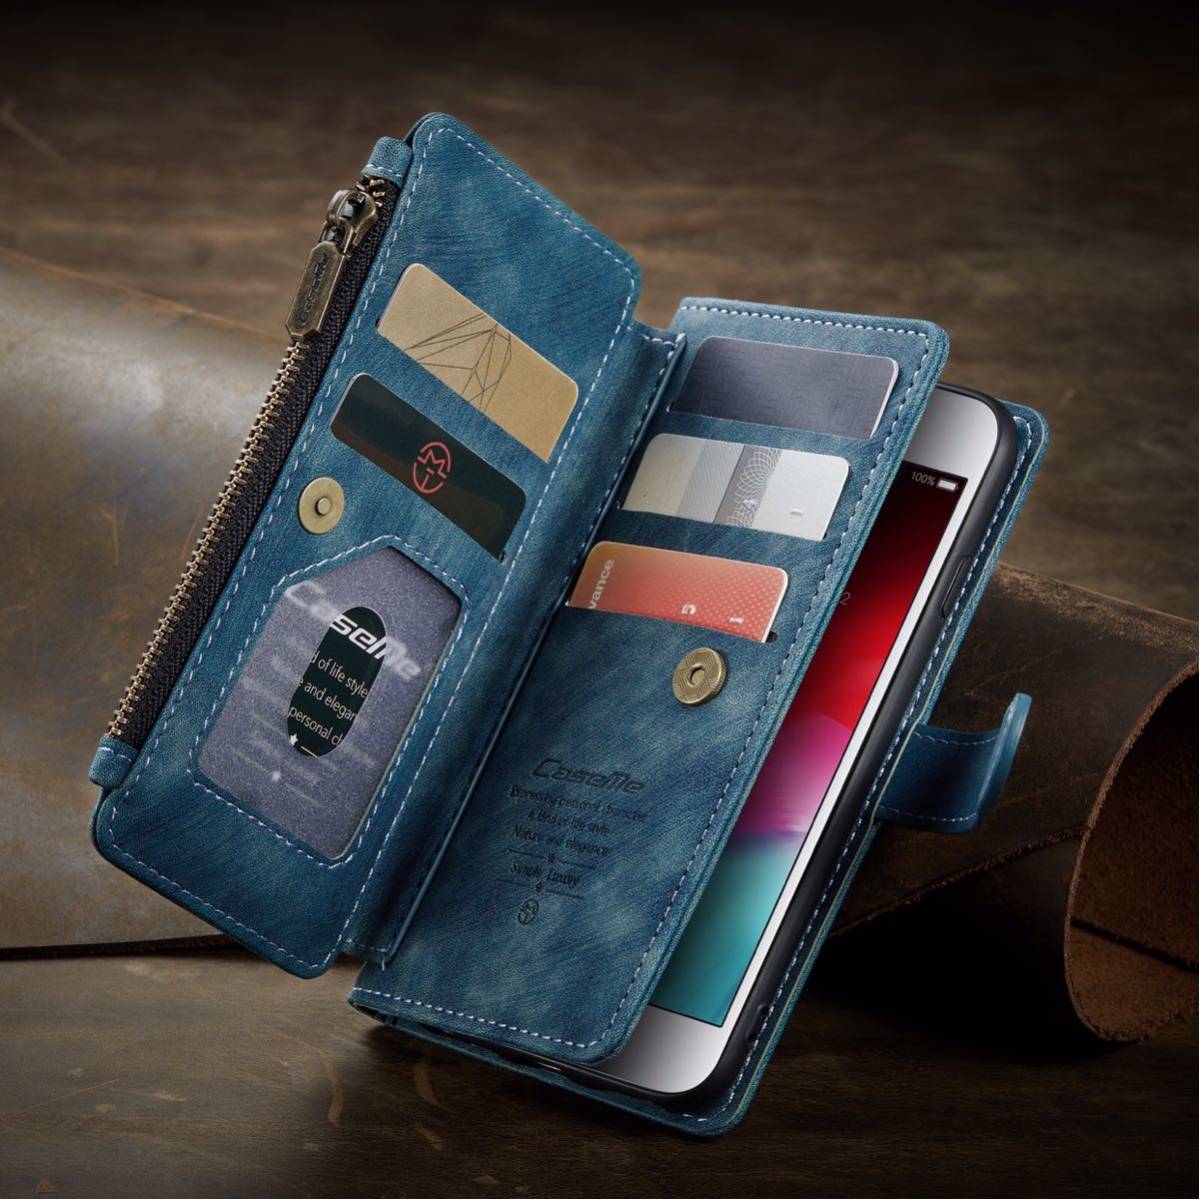 iphone6s レザーケース アイフォン6s ケース iphone6/6s レザーケース 手帳型 カード収納 お財布付き ブルー